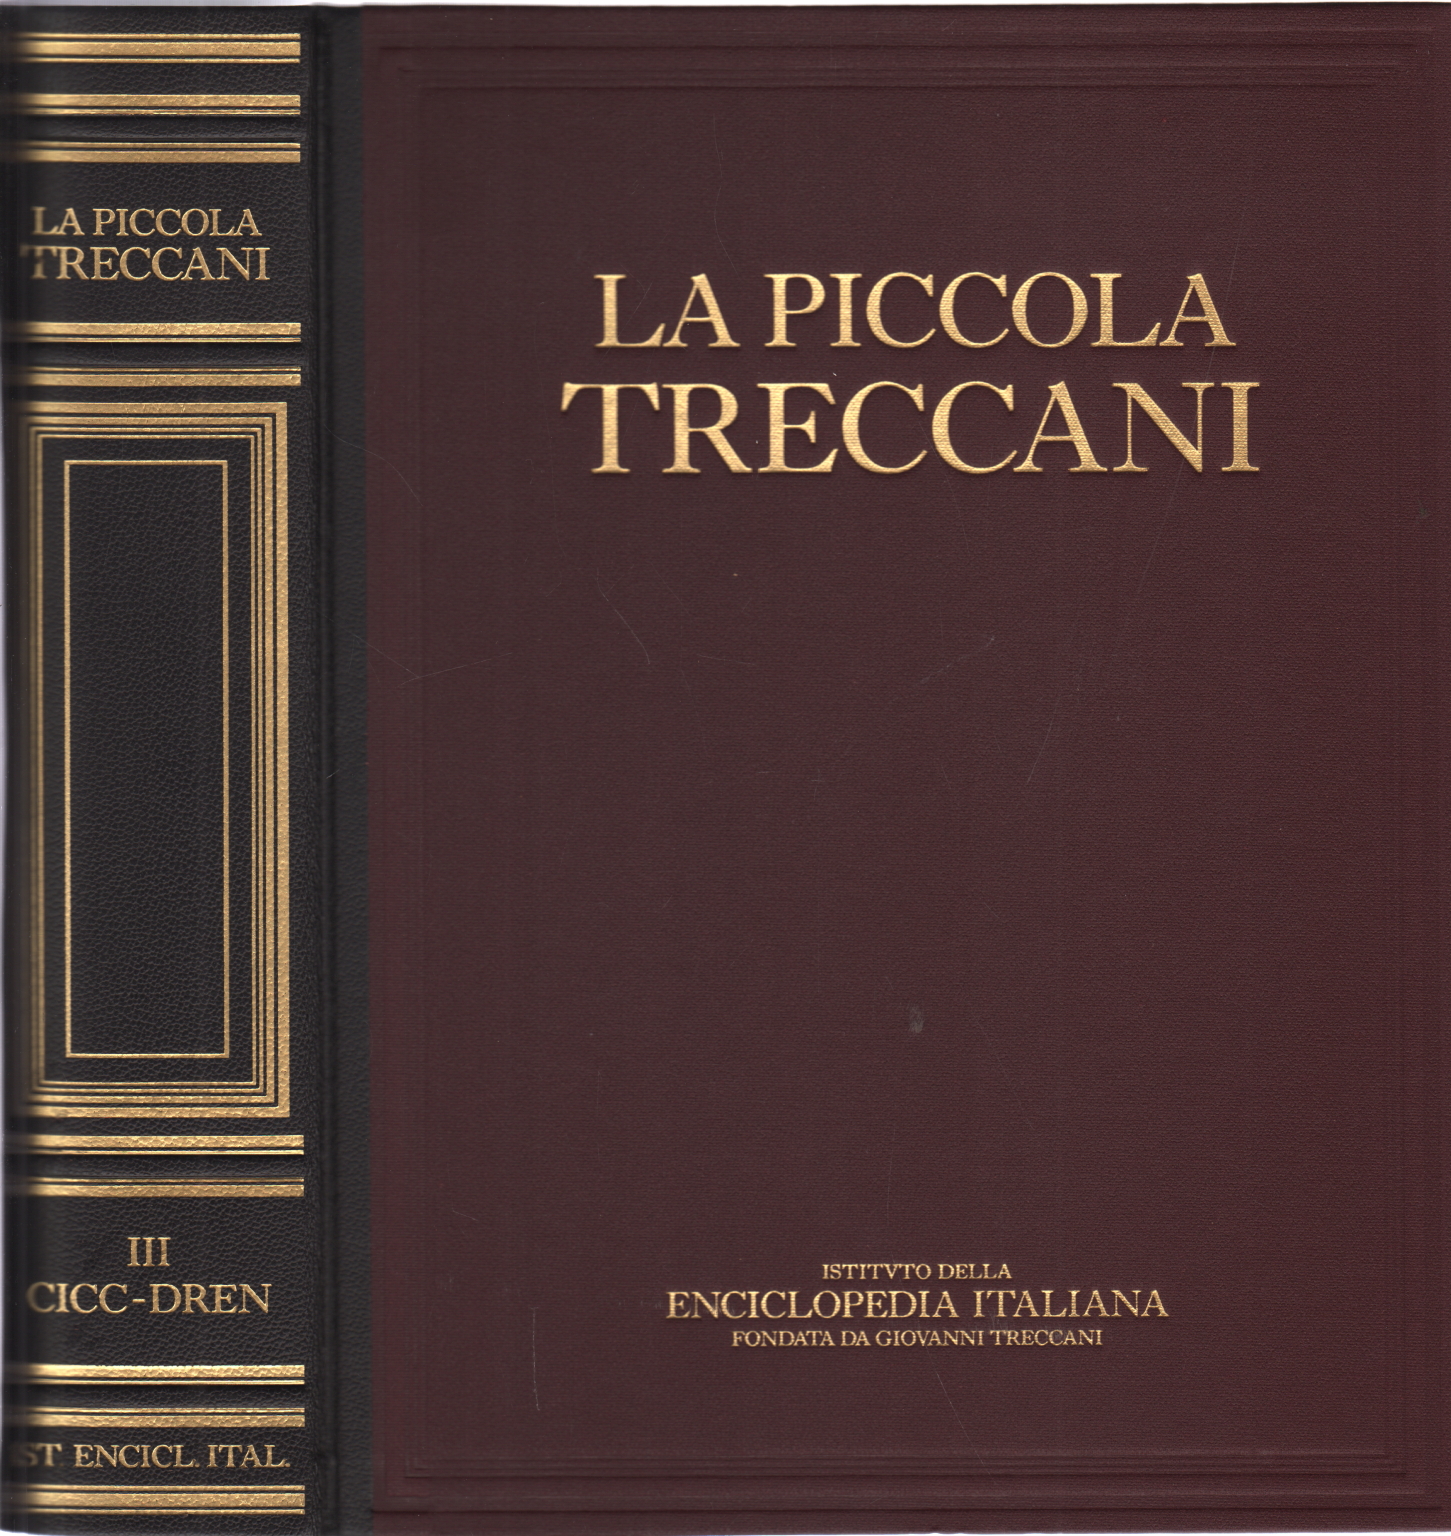 Der kleine Treccani III Cicc-Dren